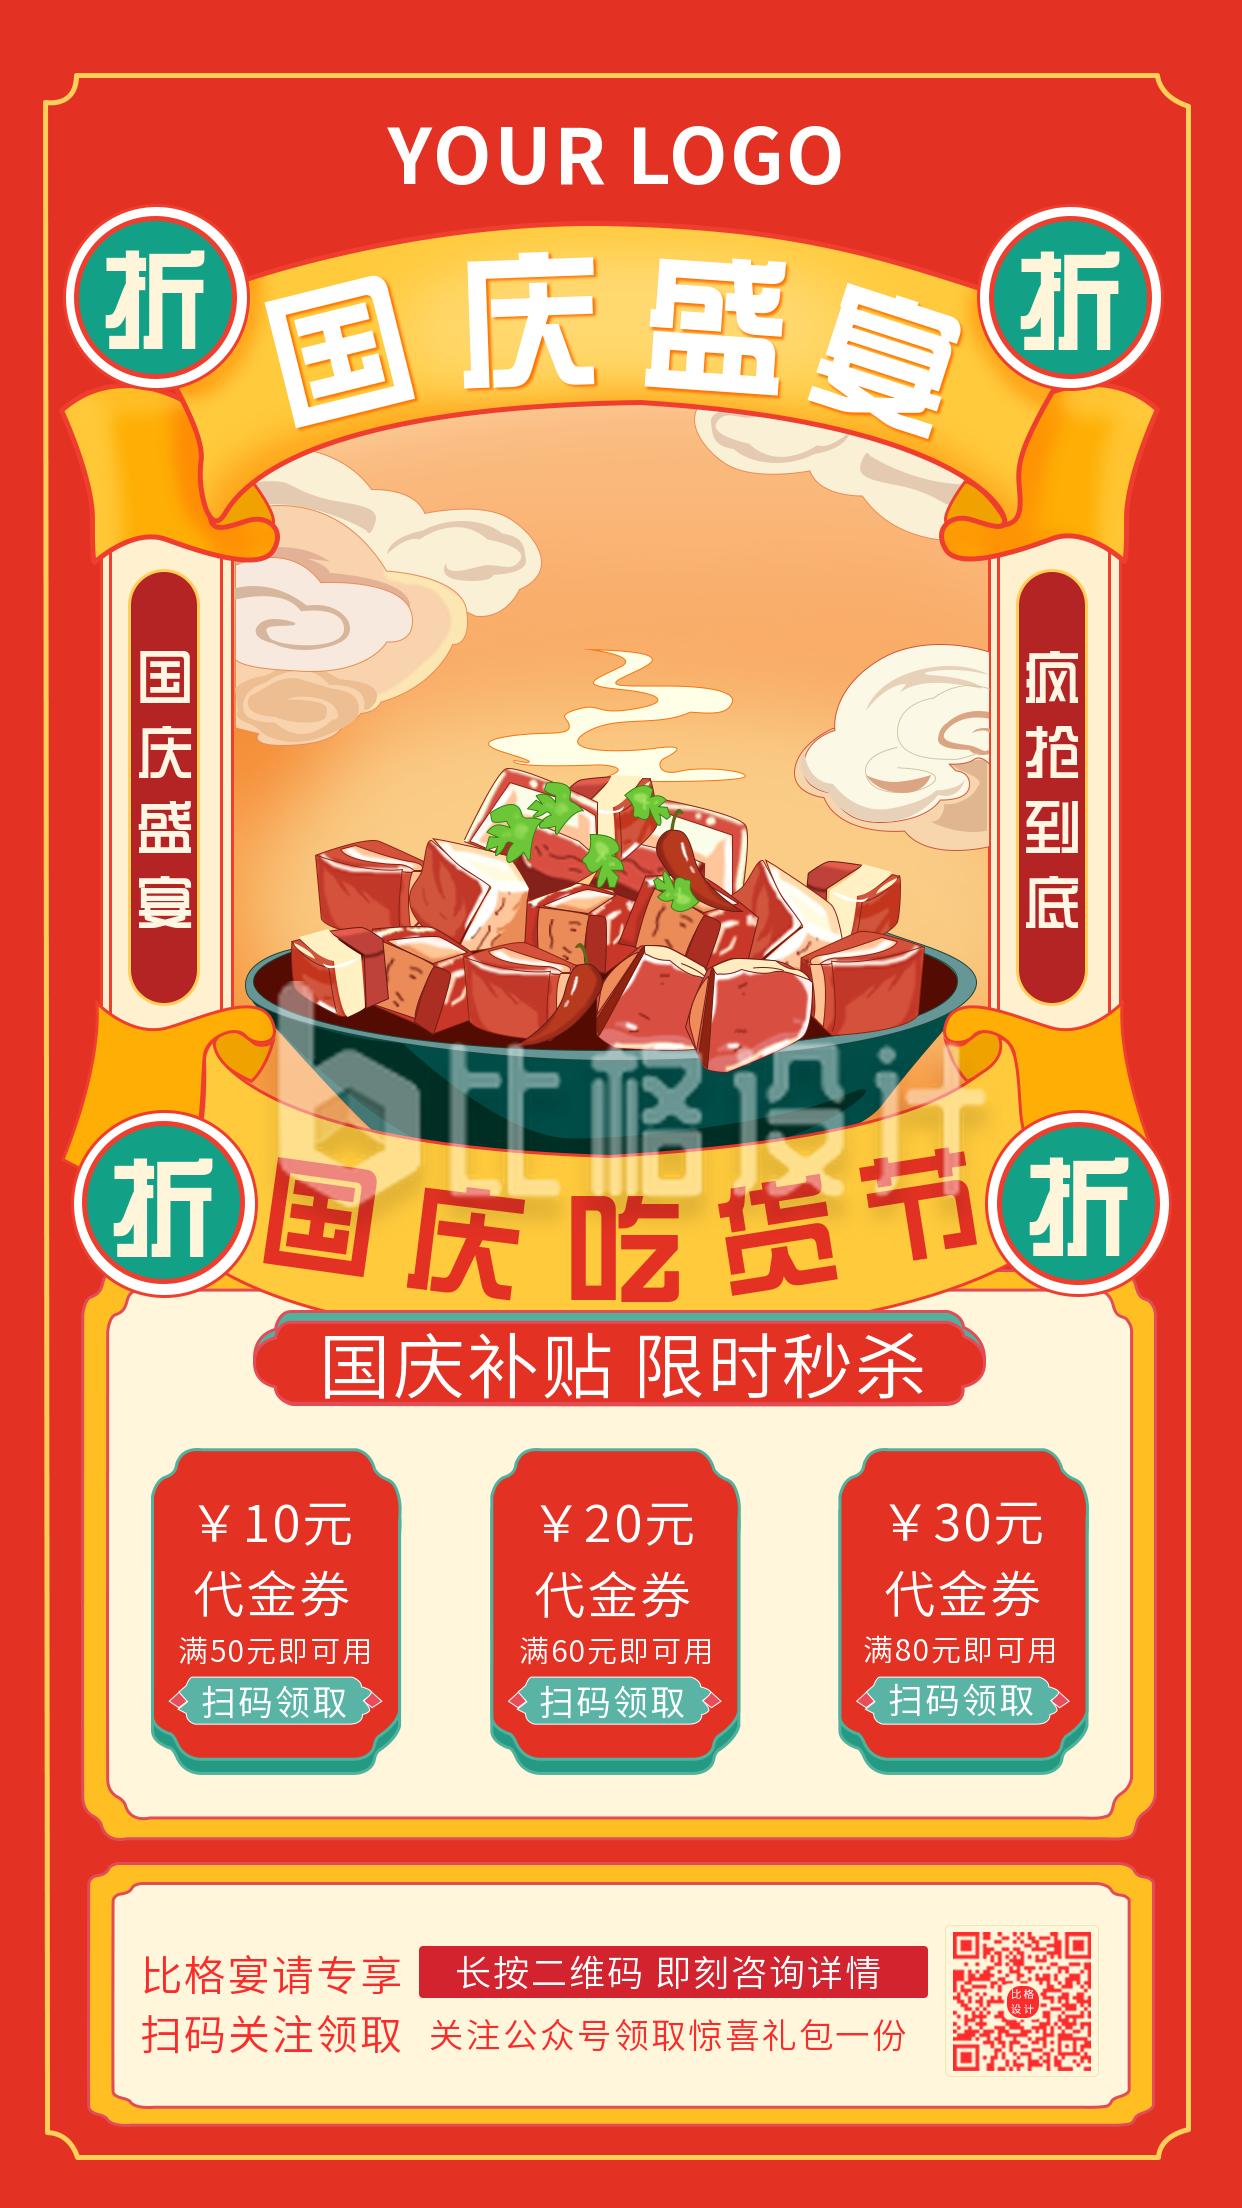 国庆宴请中餐优惠活动中国风手绘手机海报